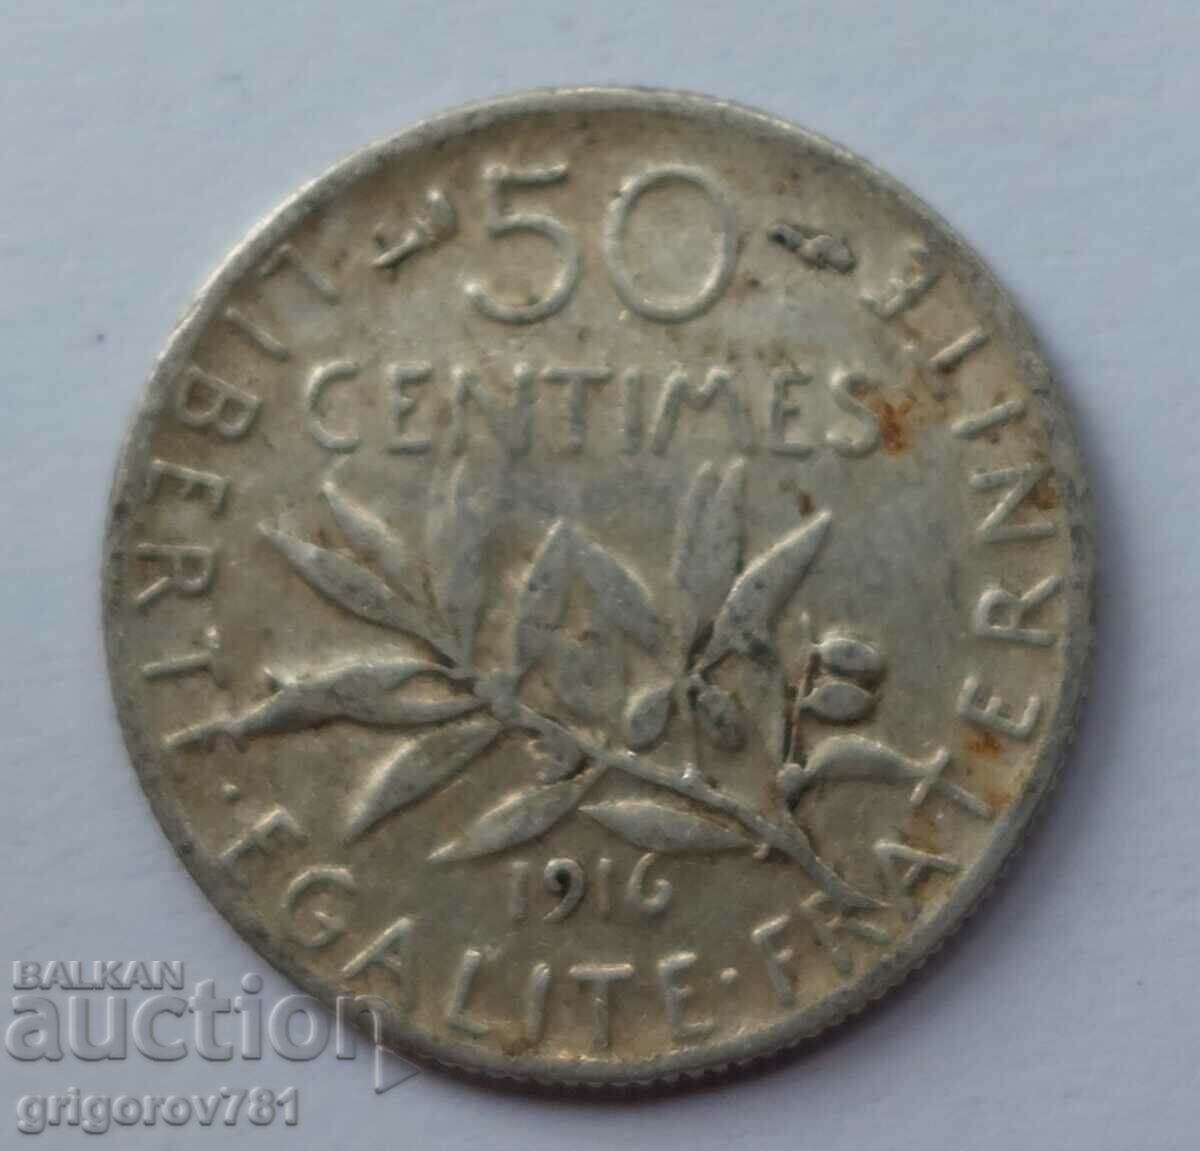 50 de cenți argint Franța 1916 - monedă de argint №50